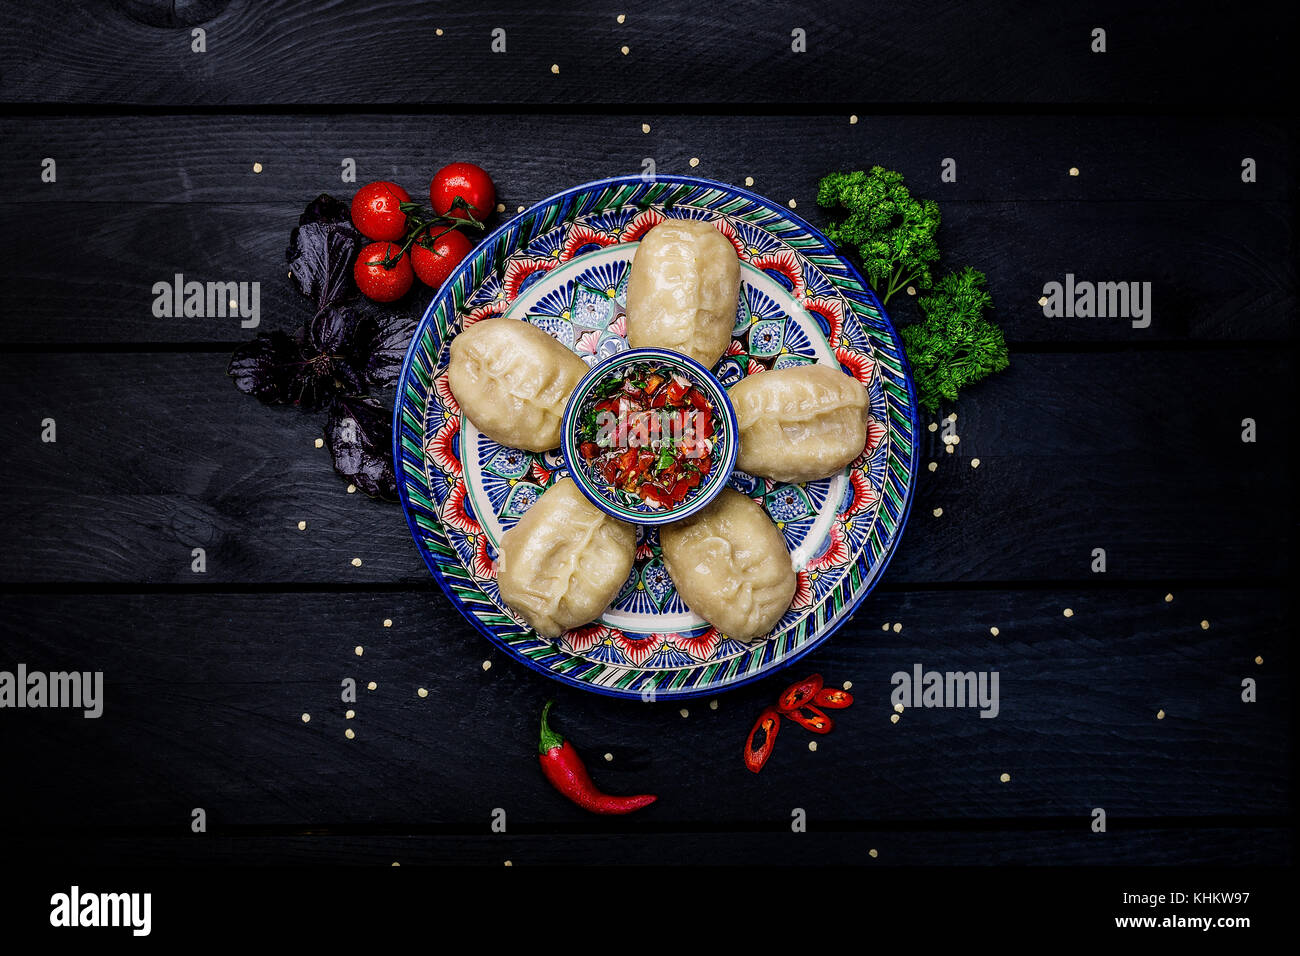 Los dumplings al vapor tradicional manti en placa con ornamento orientales con salsa de tomate. vista desde arriba. fondo de madera oscura. Foto de stock